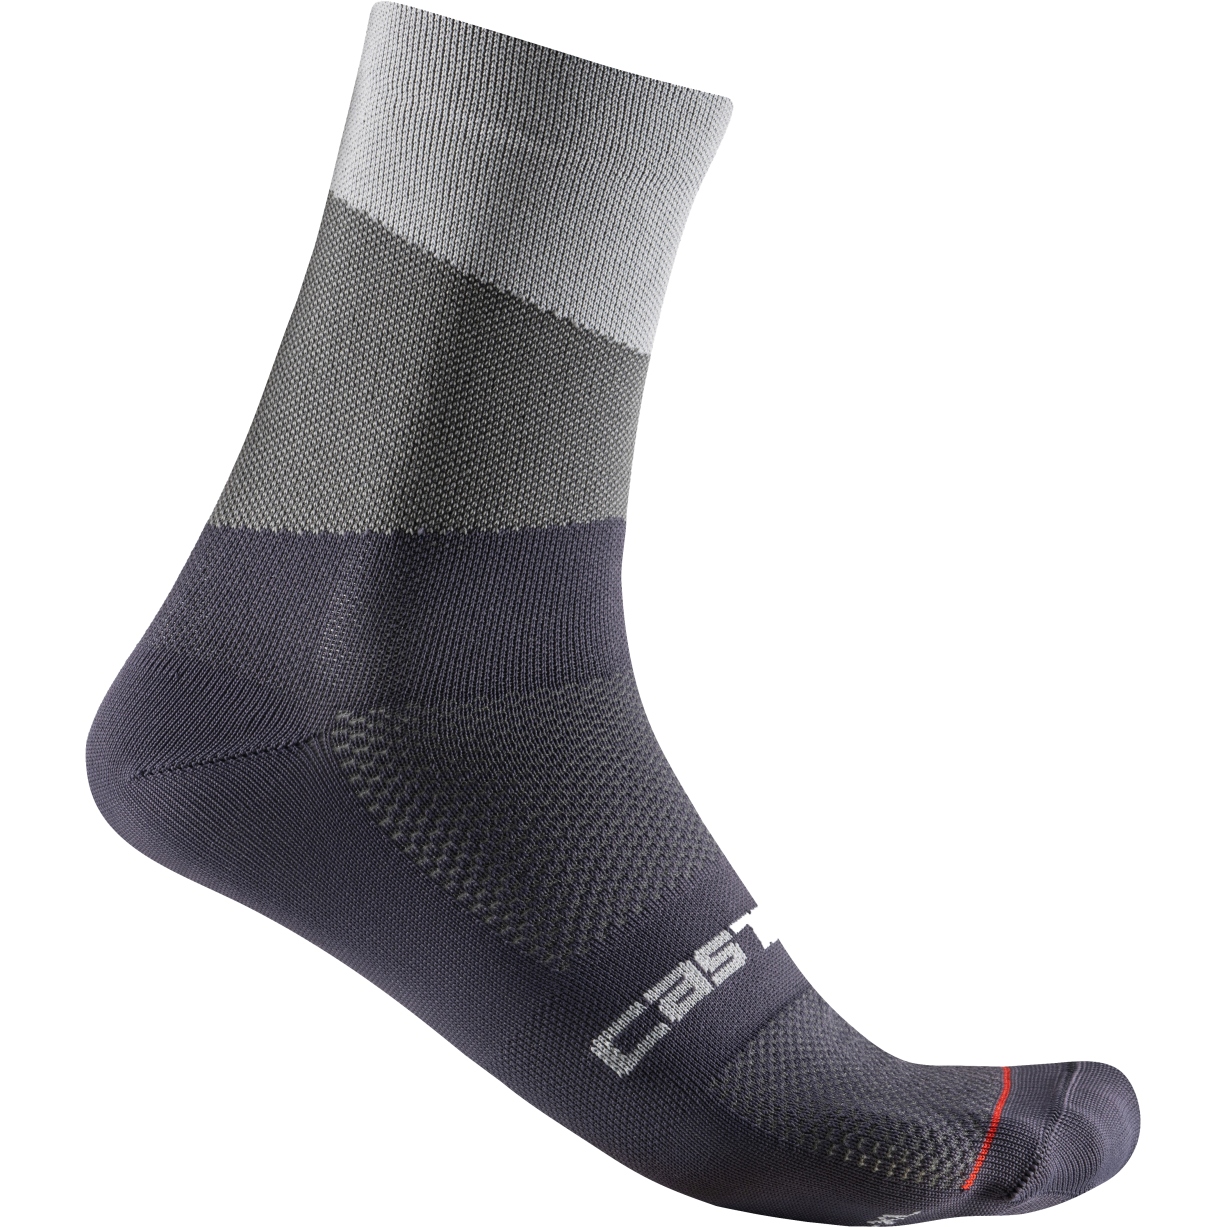 Produktbild von Castelli Orizzonte 15 Socken - silver grey/dark grey 870